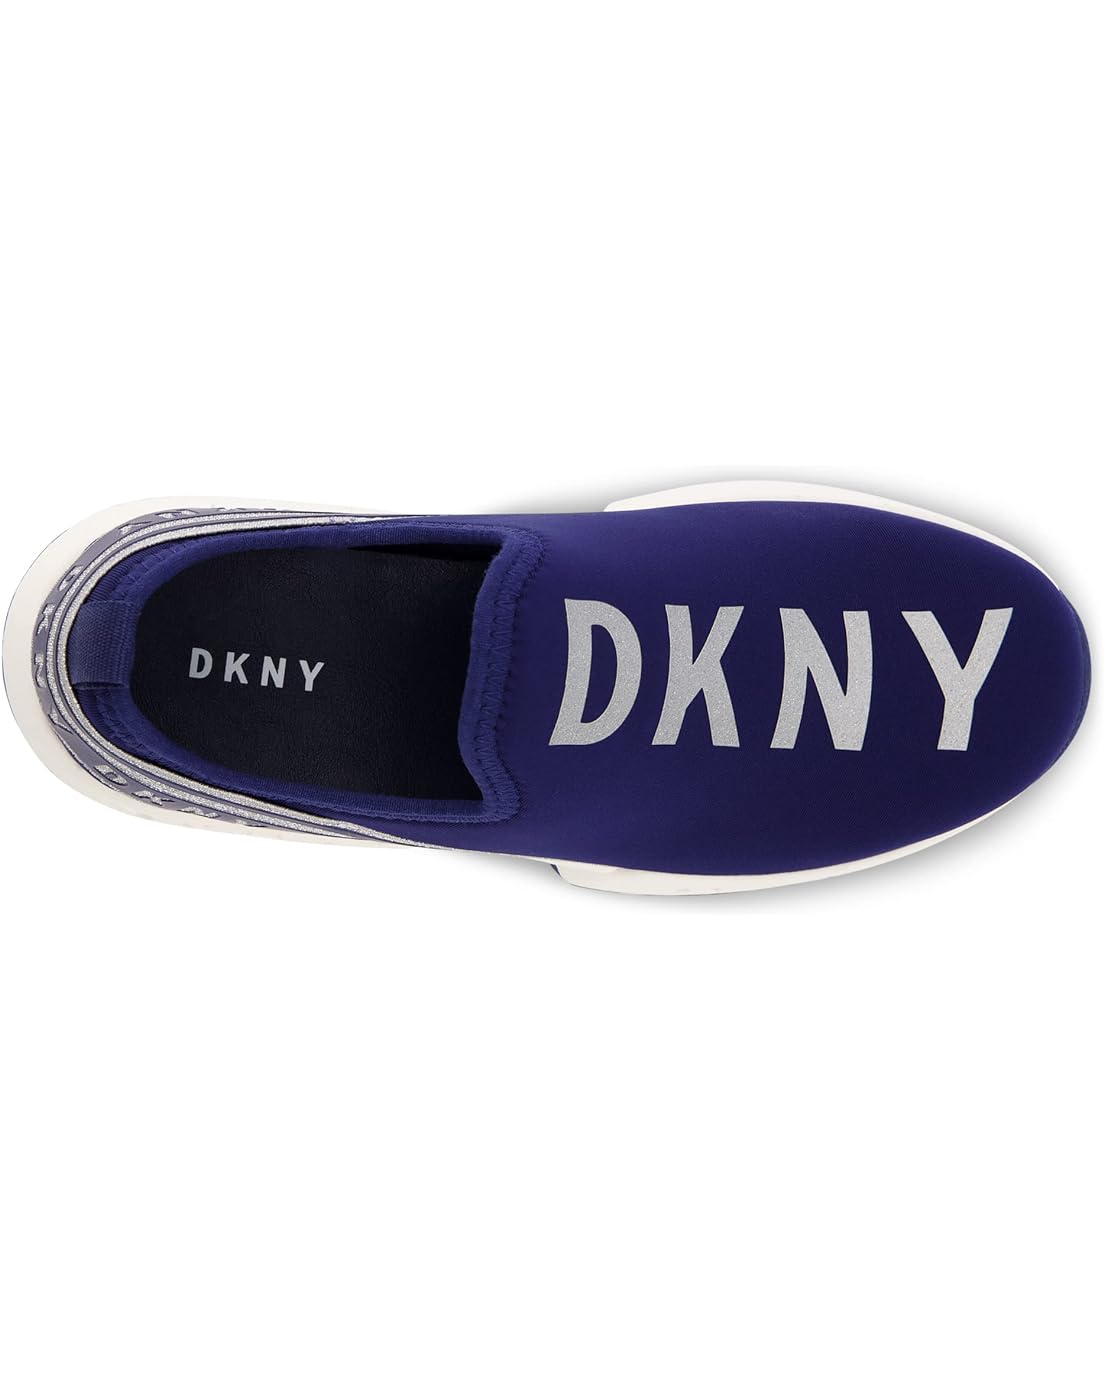  DKNY Kids Maddie Slip-On (Little Kid/Big Kid)